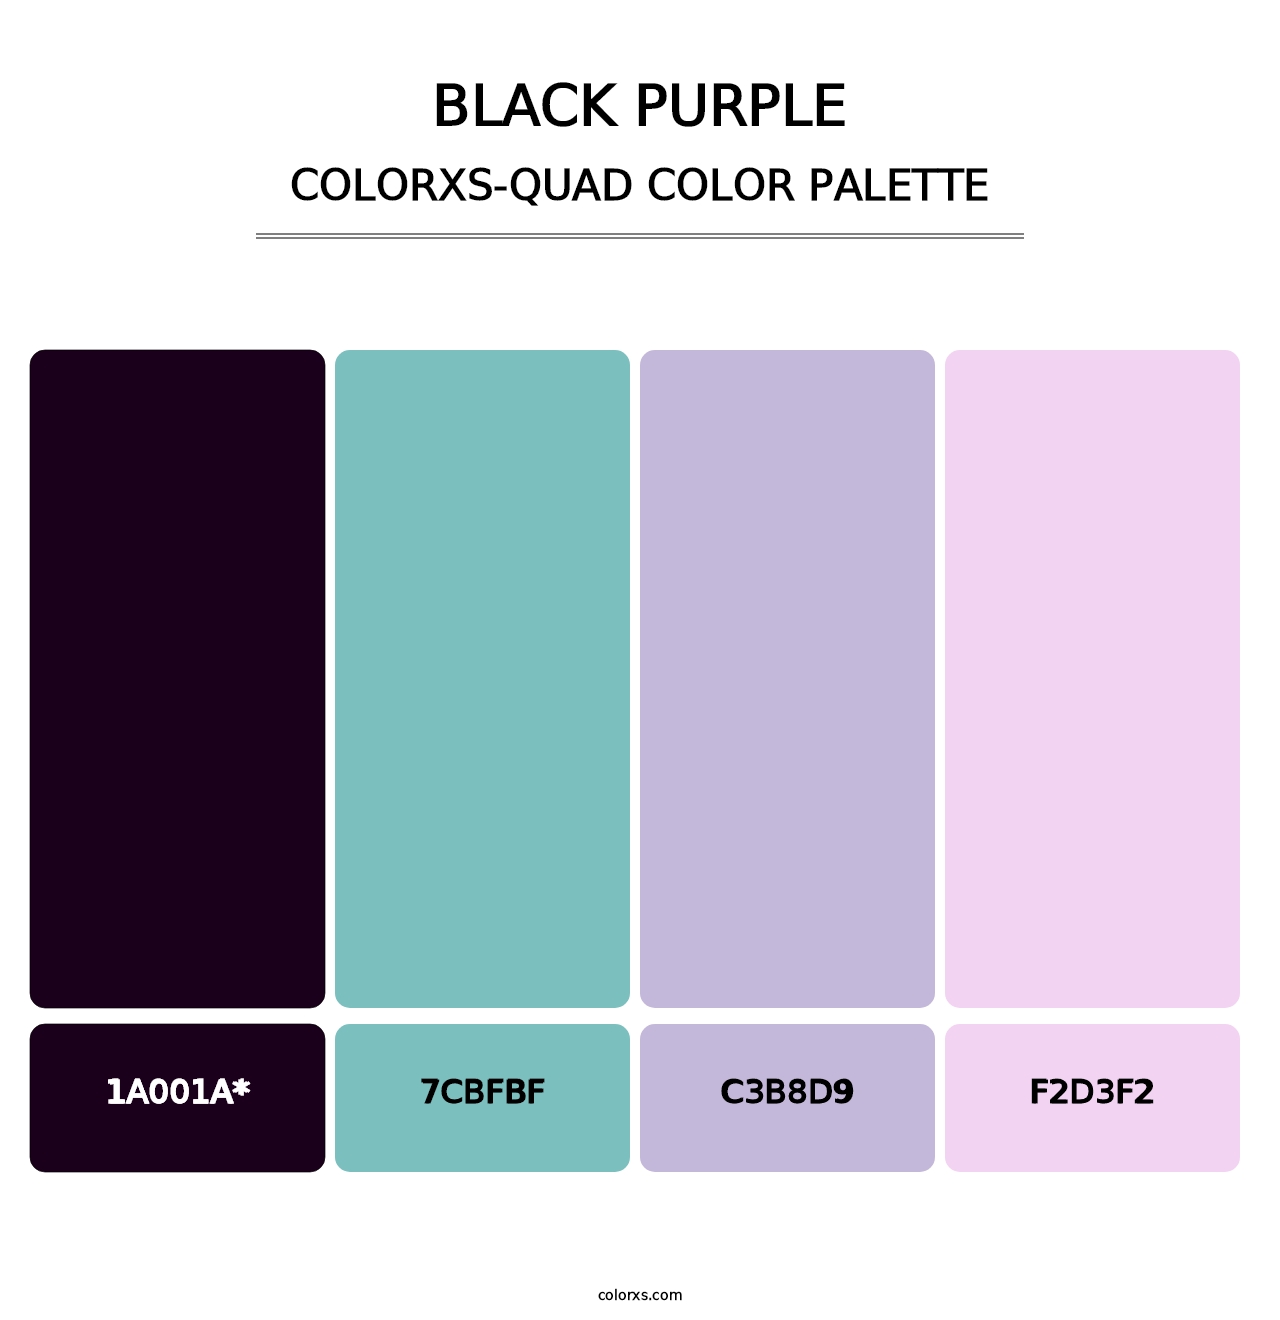 Black Purple - Colorxs Quad Palette